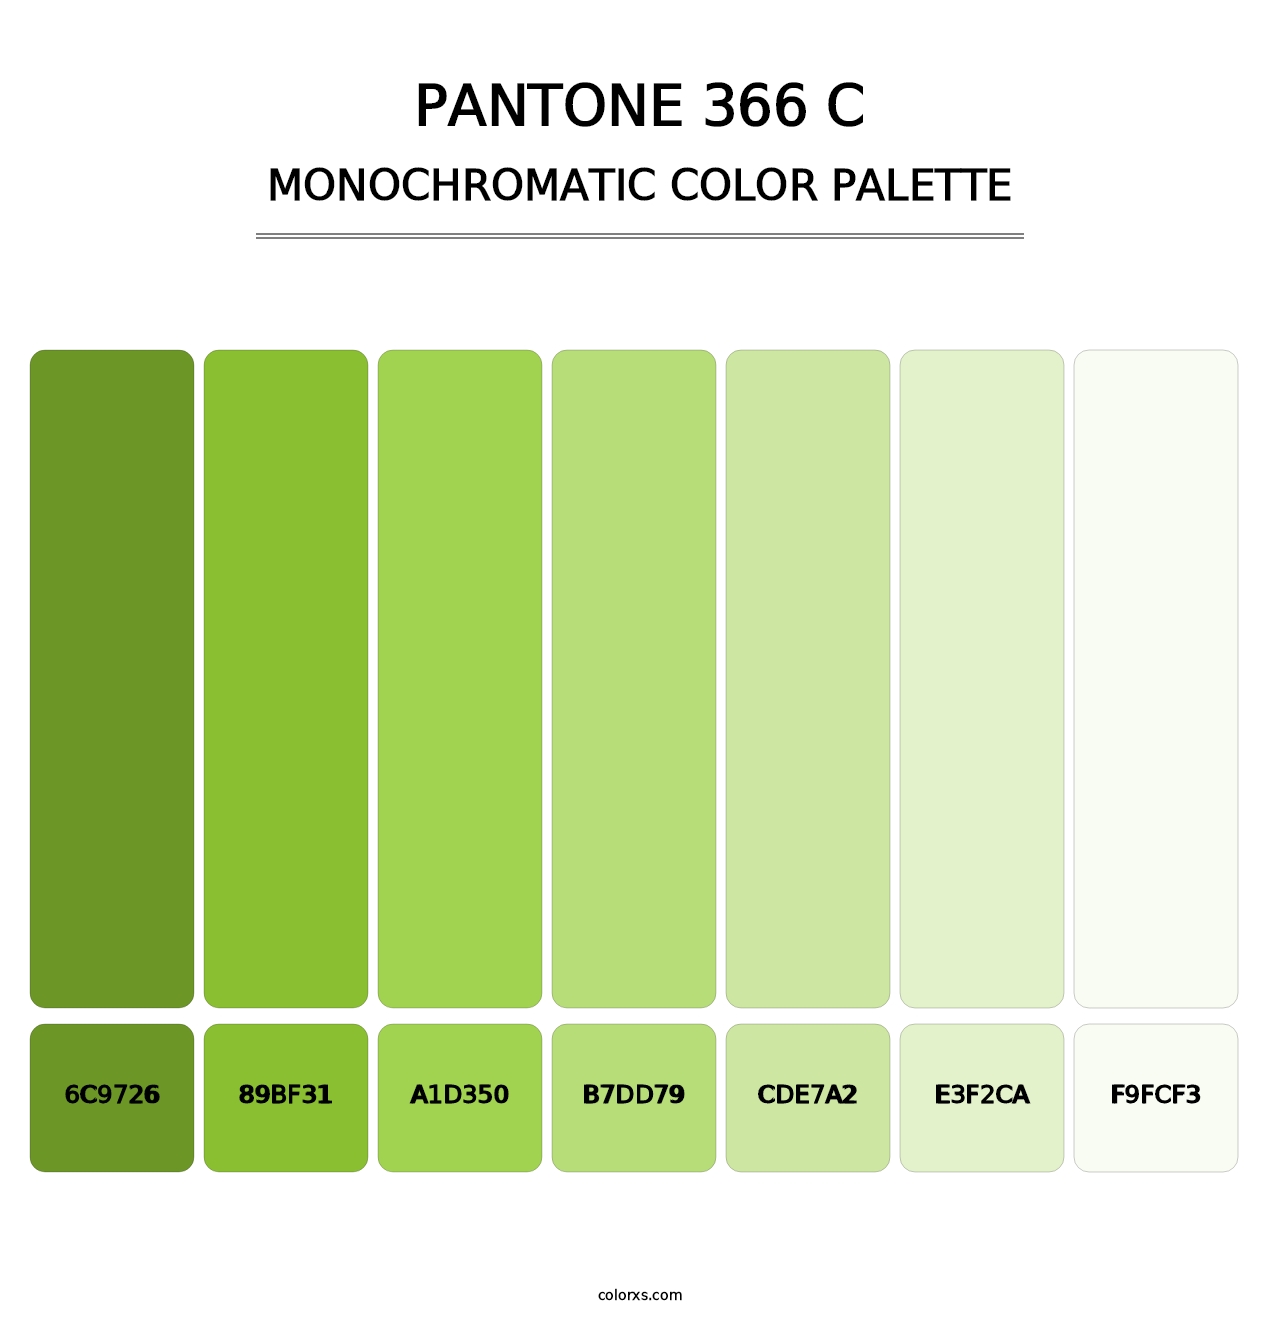 PANTONE 366 C - Monochromatic Color Palette